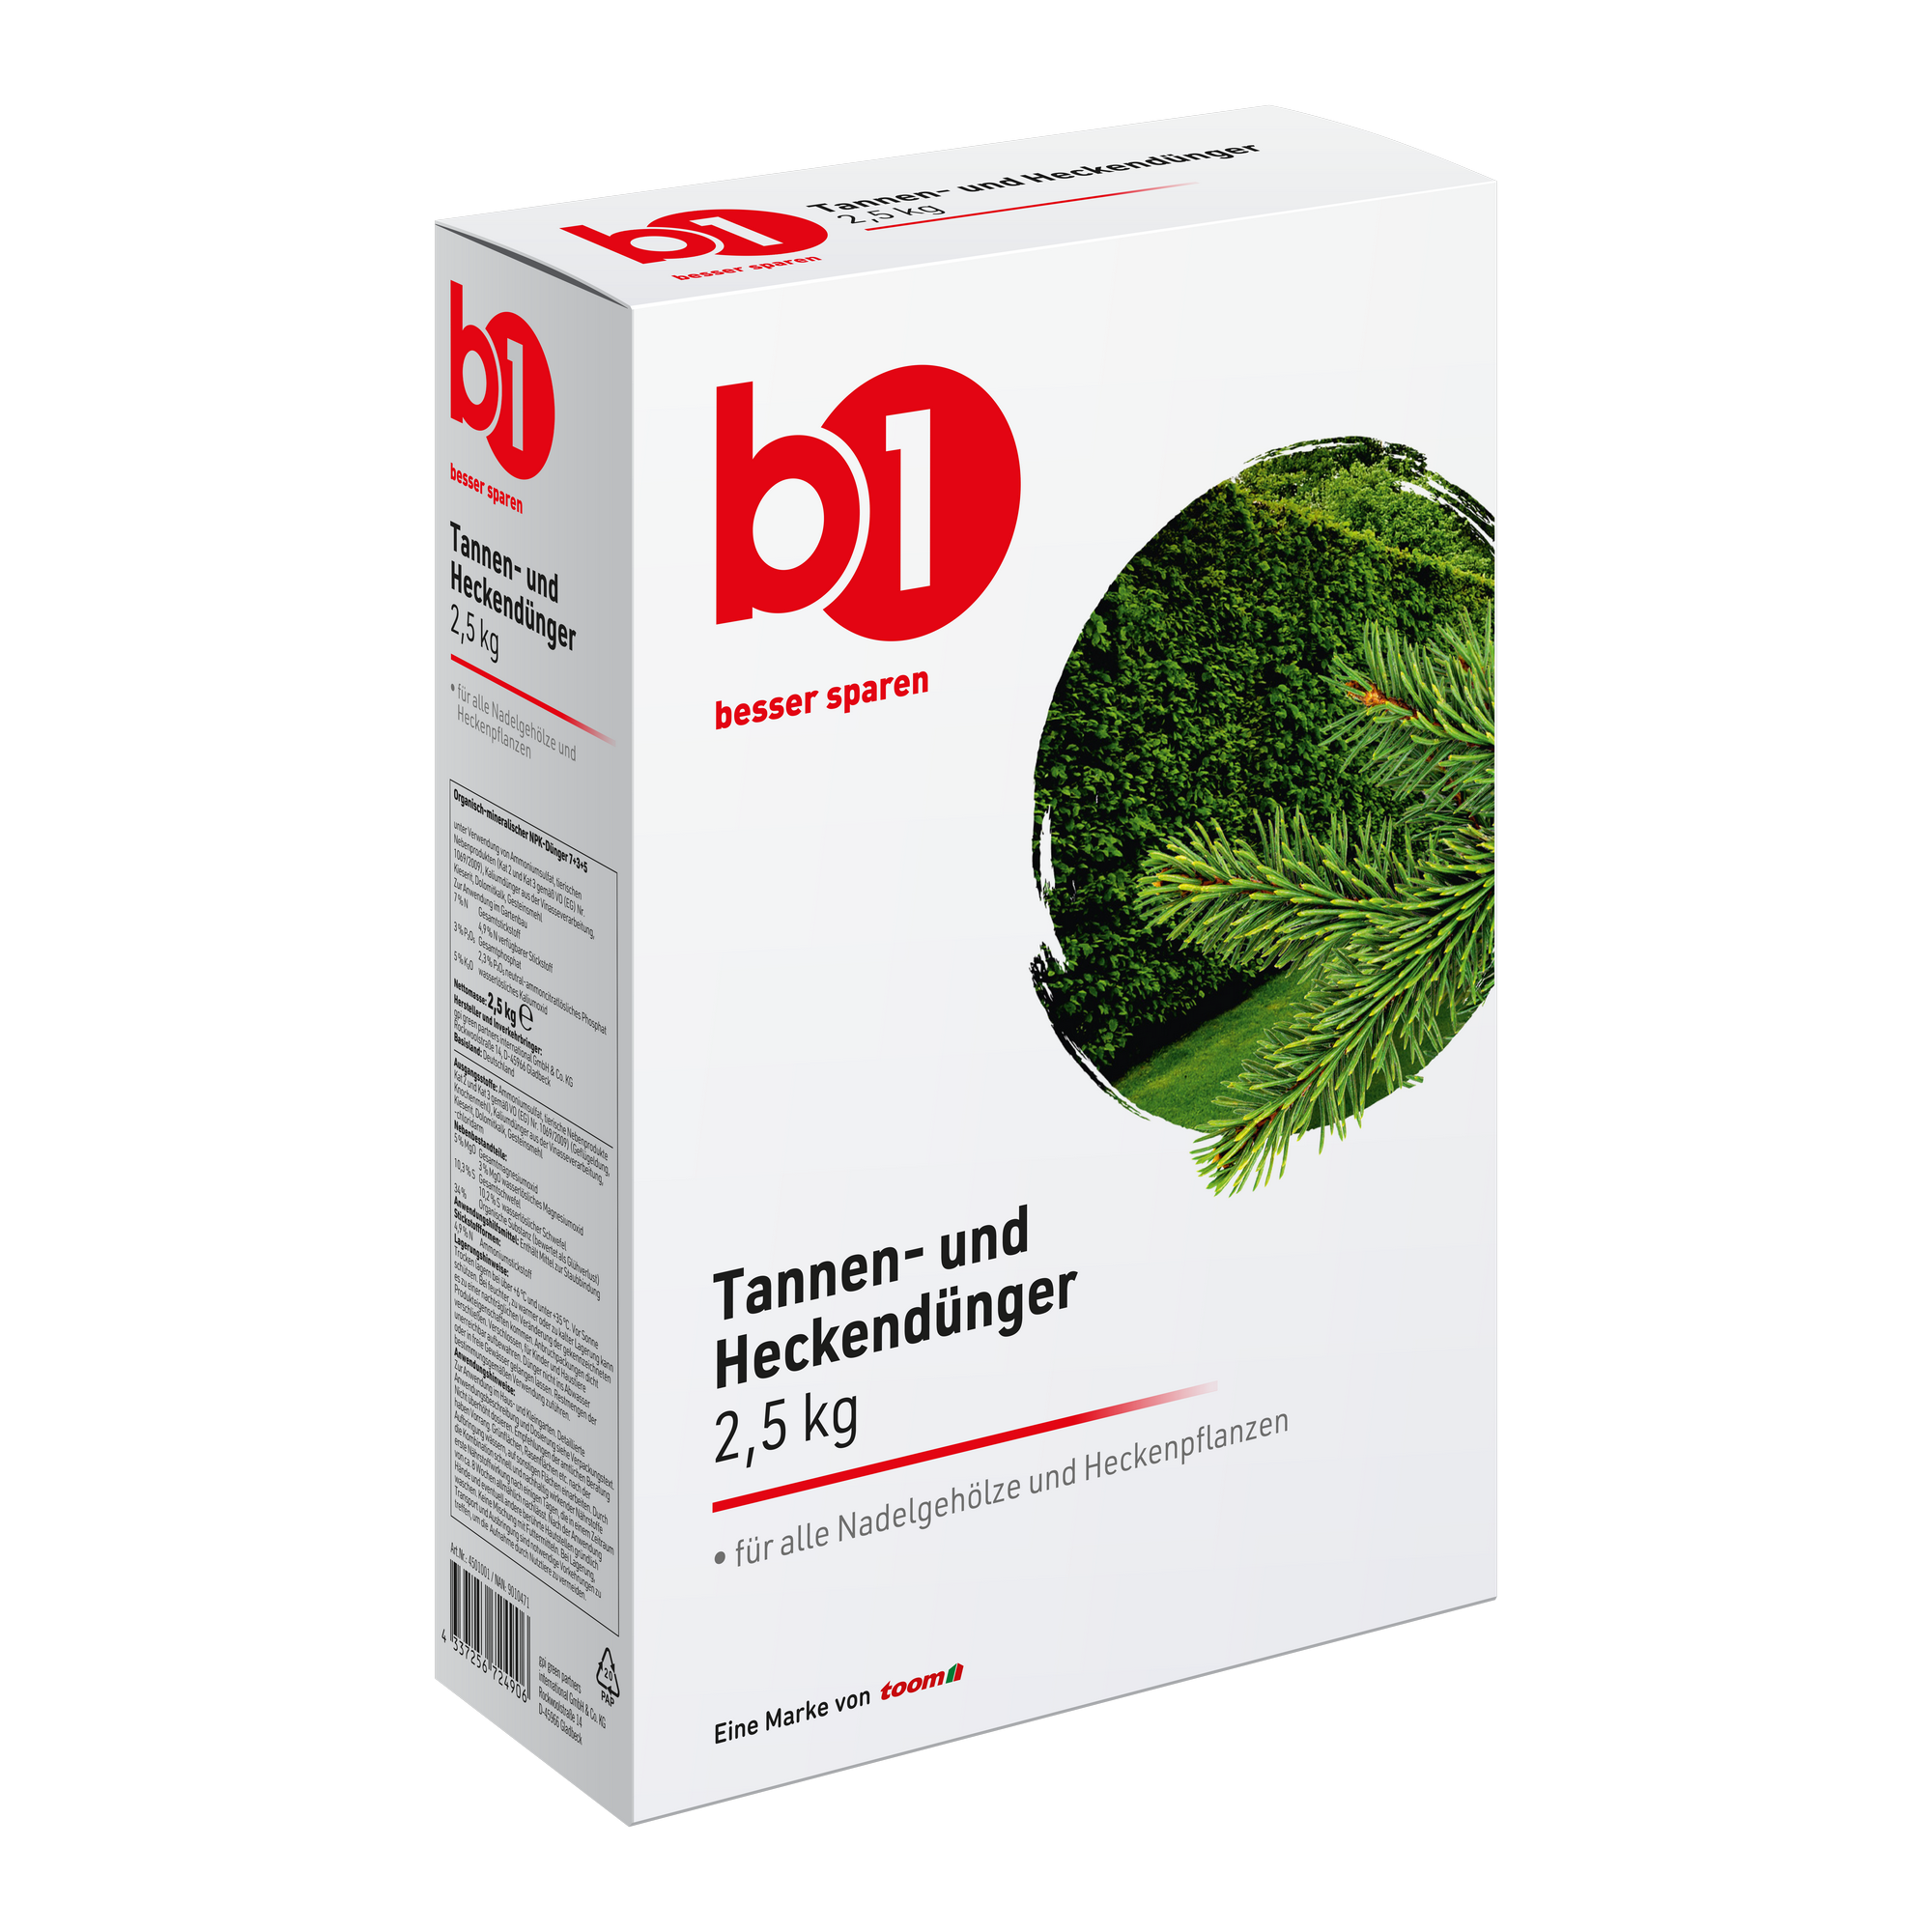 Tannen- und Heckendünger 2,5 kg + product picture